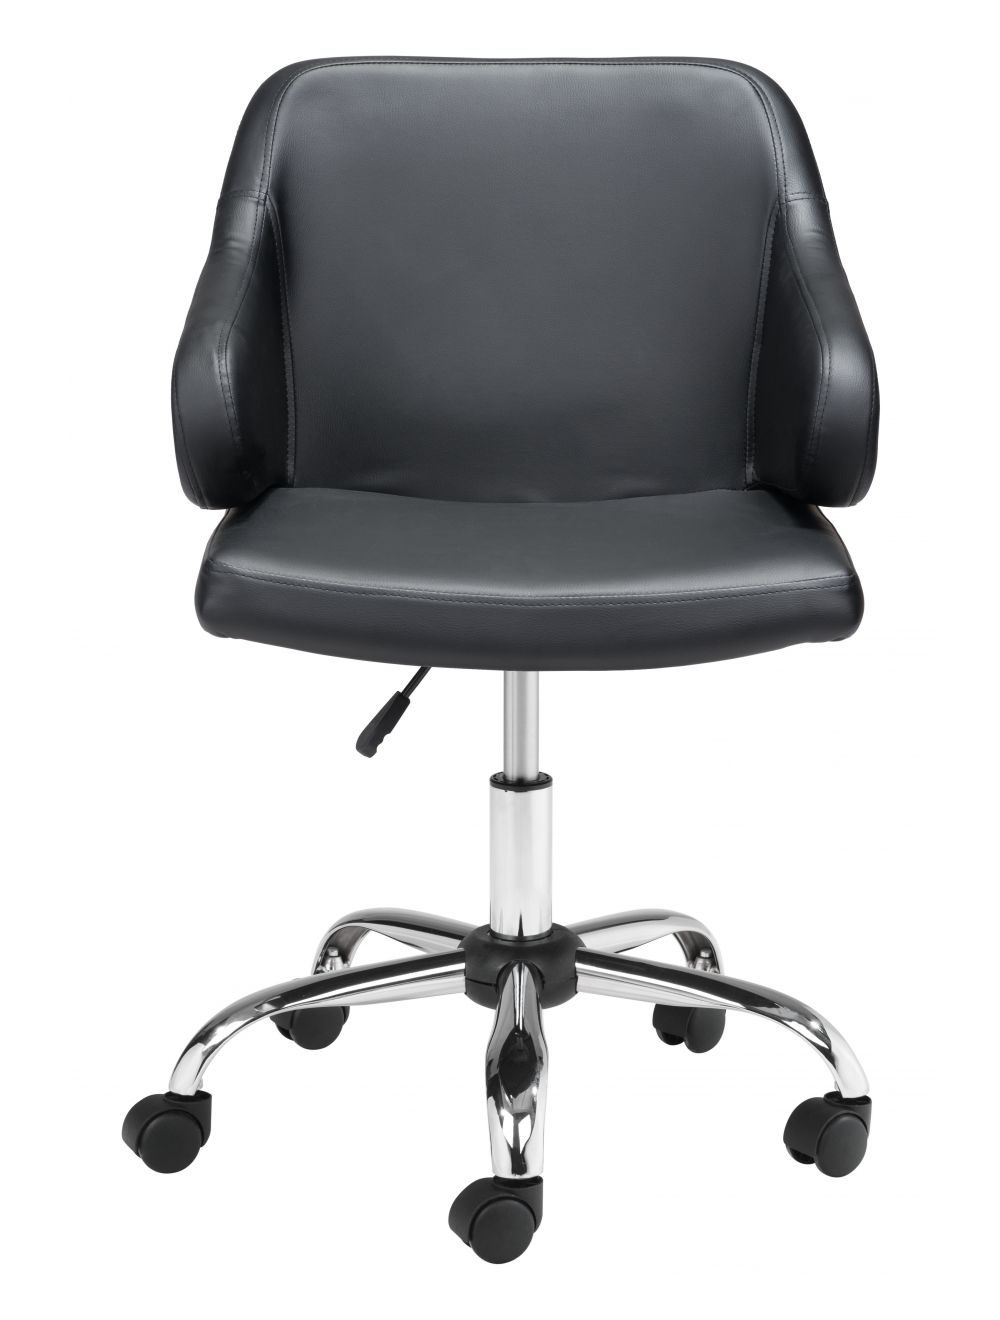 Designer Office Chair Black & Walnut